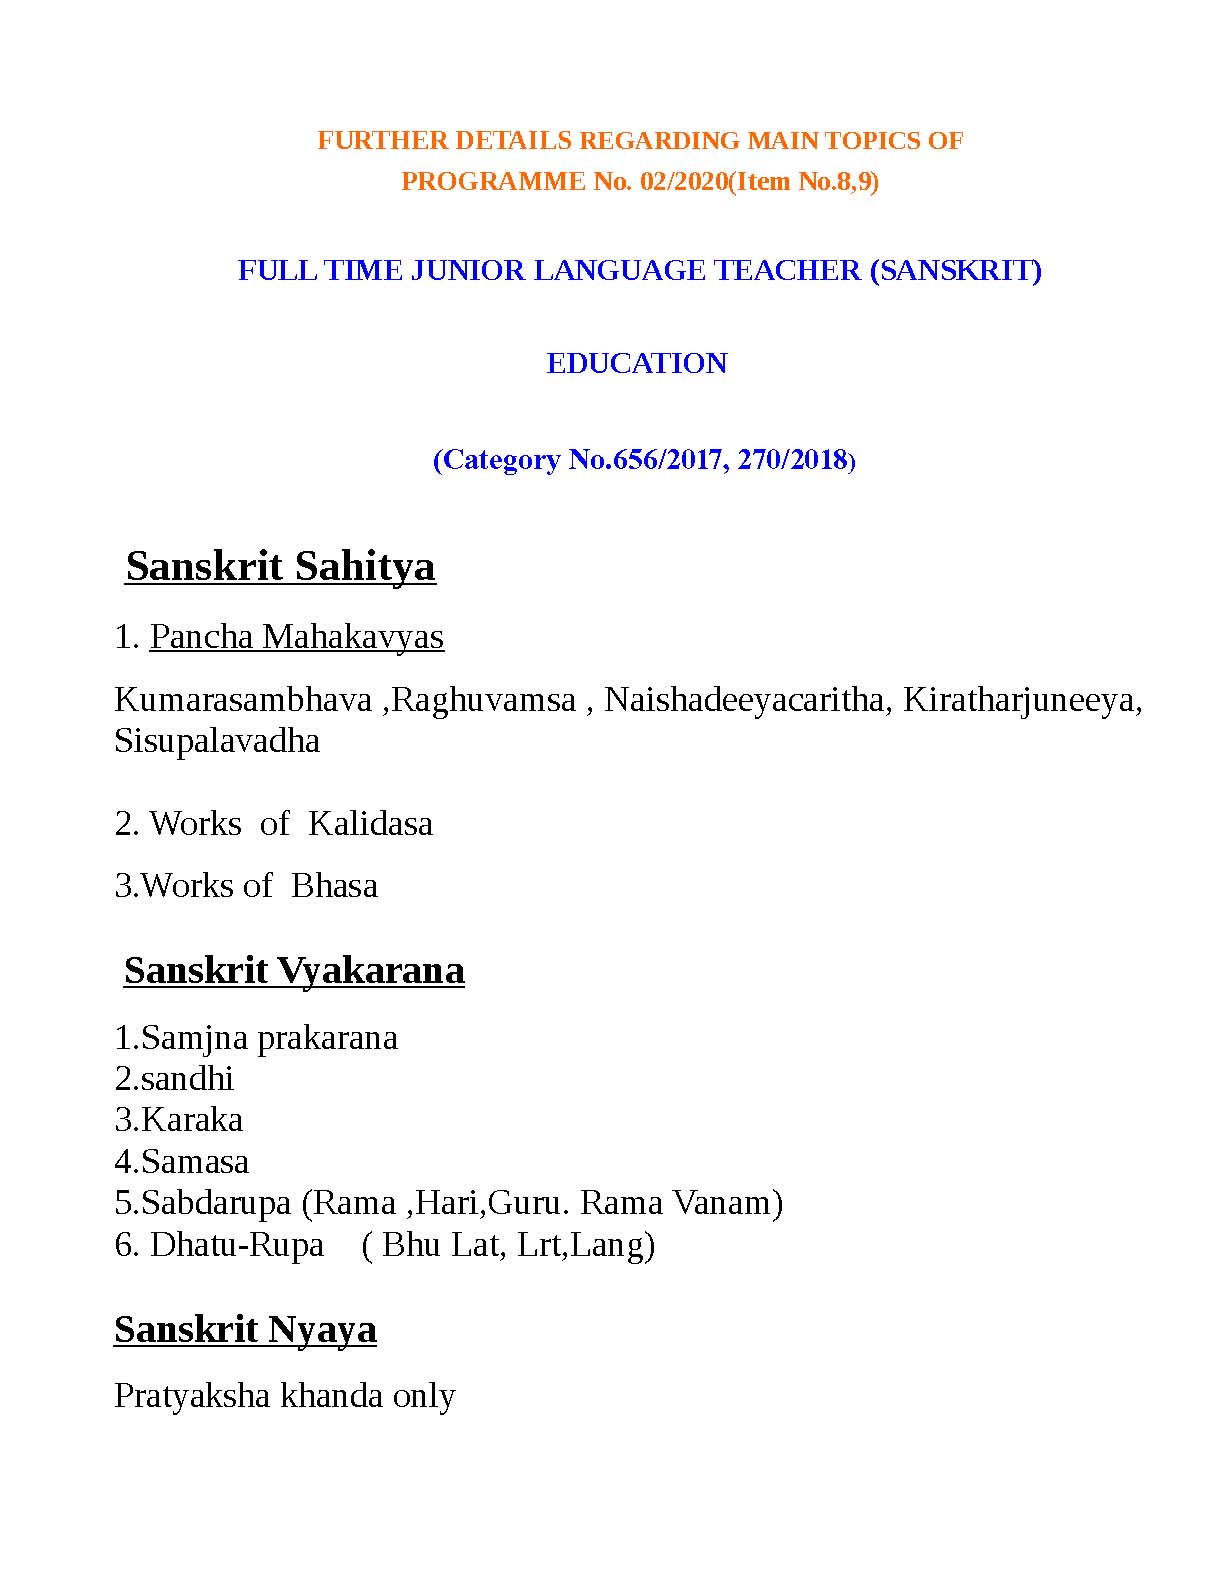 Kerala PSC Full Time Junior Language Teacher Sanskrit Exam Syllabus - Notification Image 1